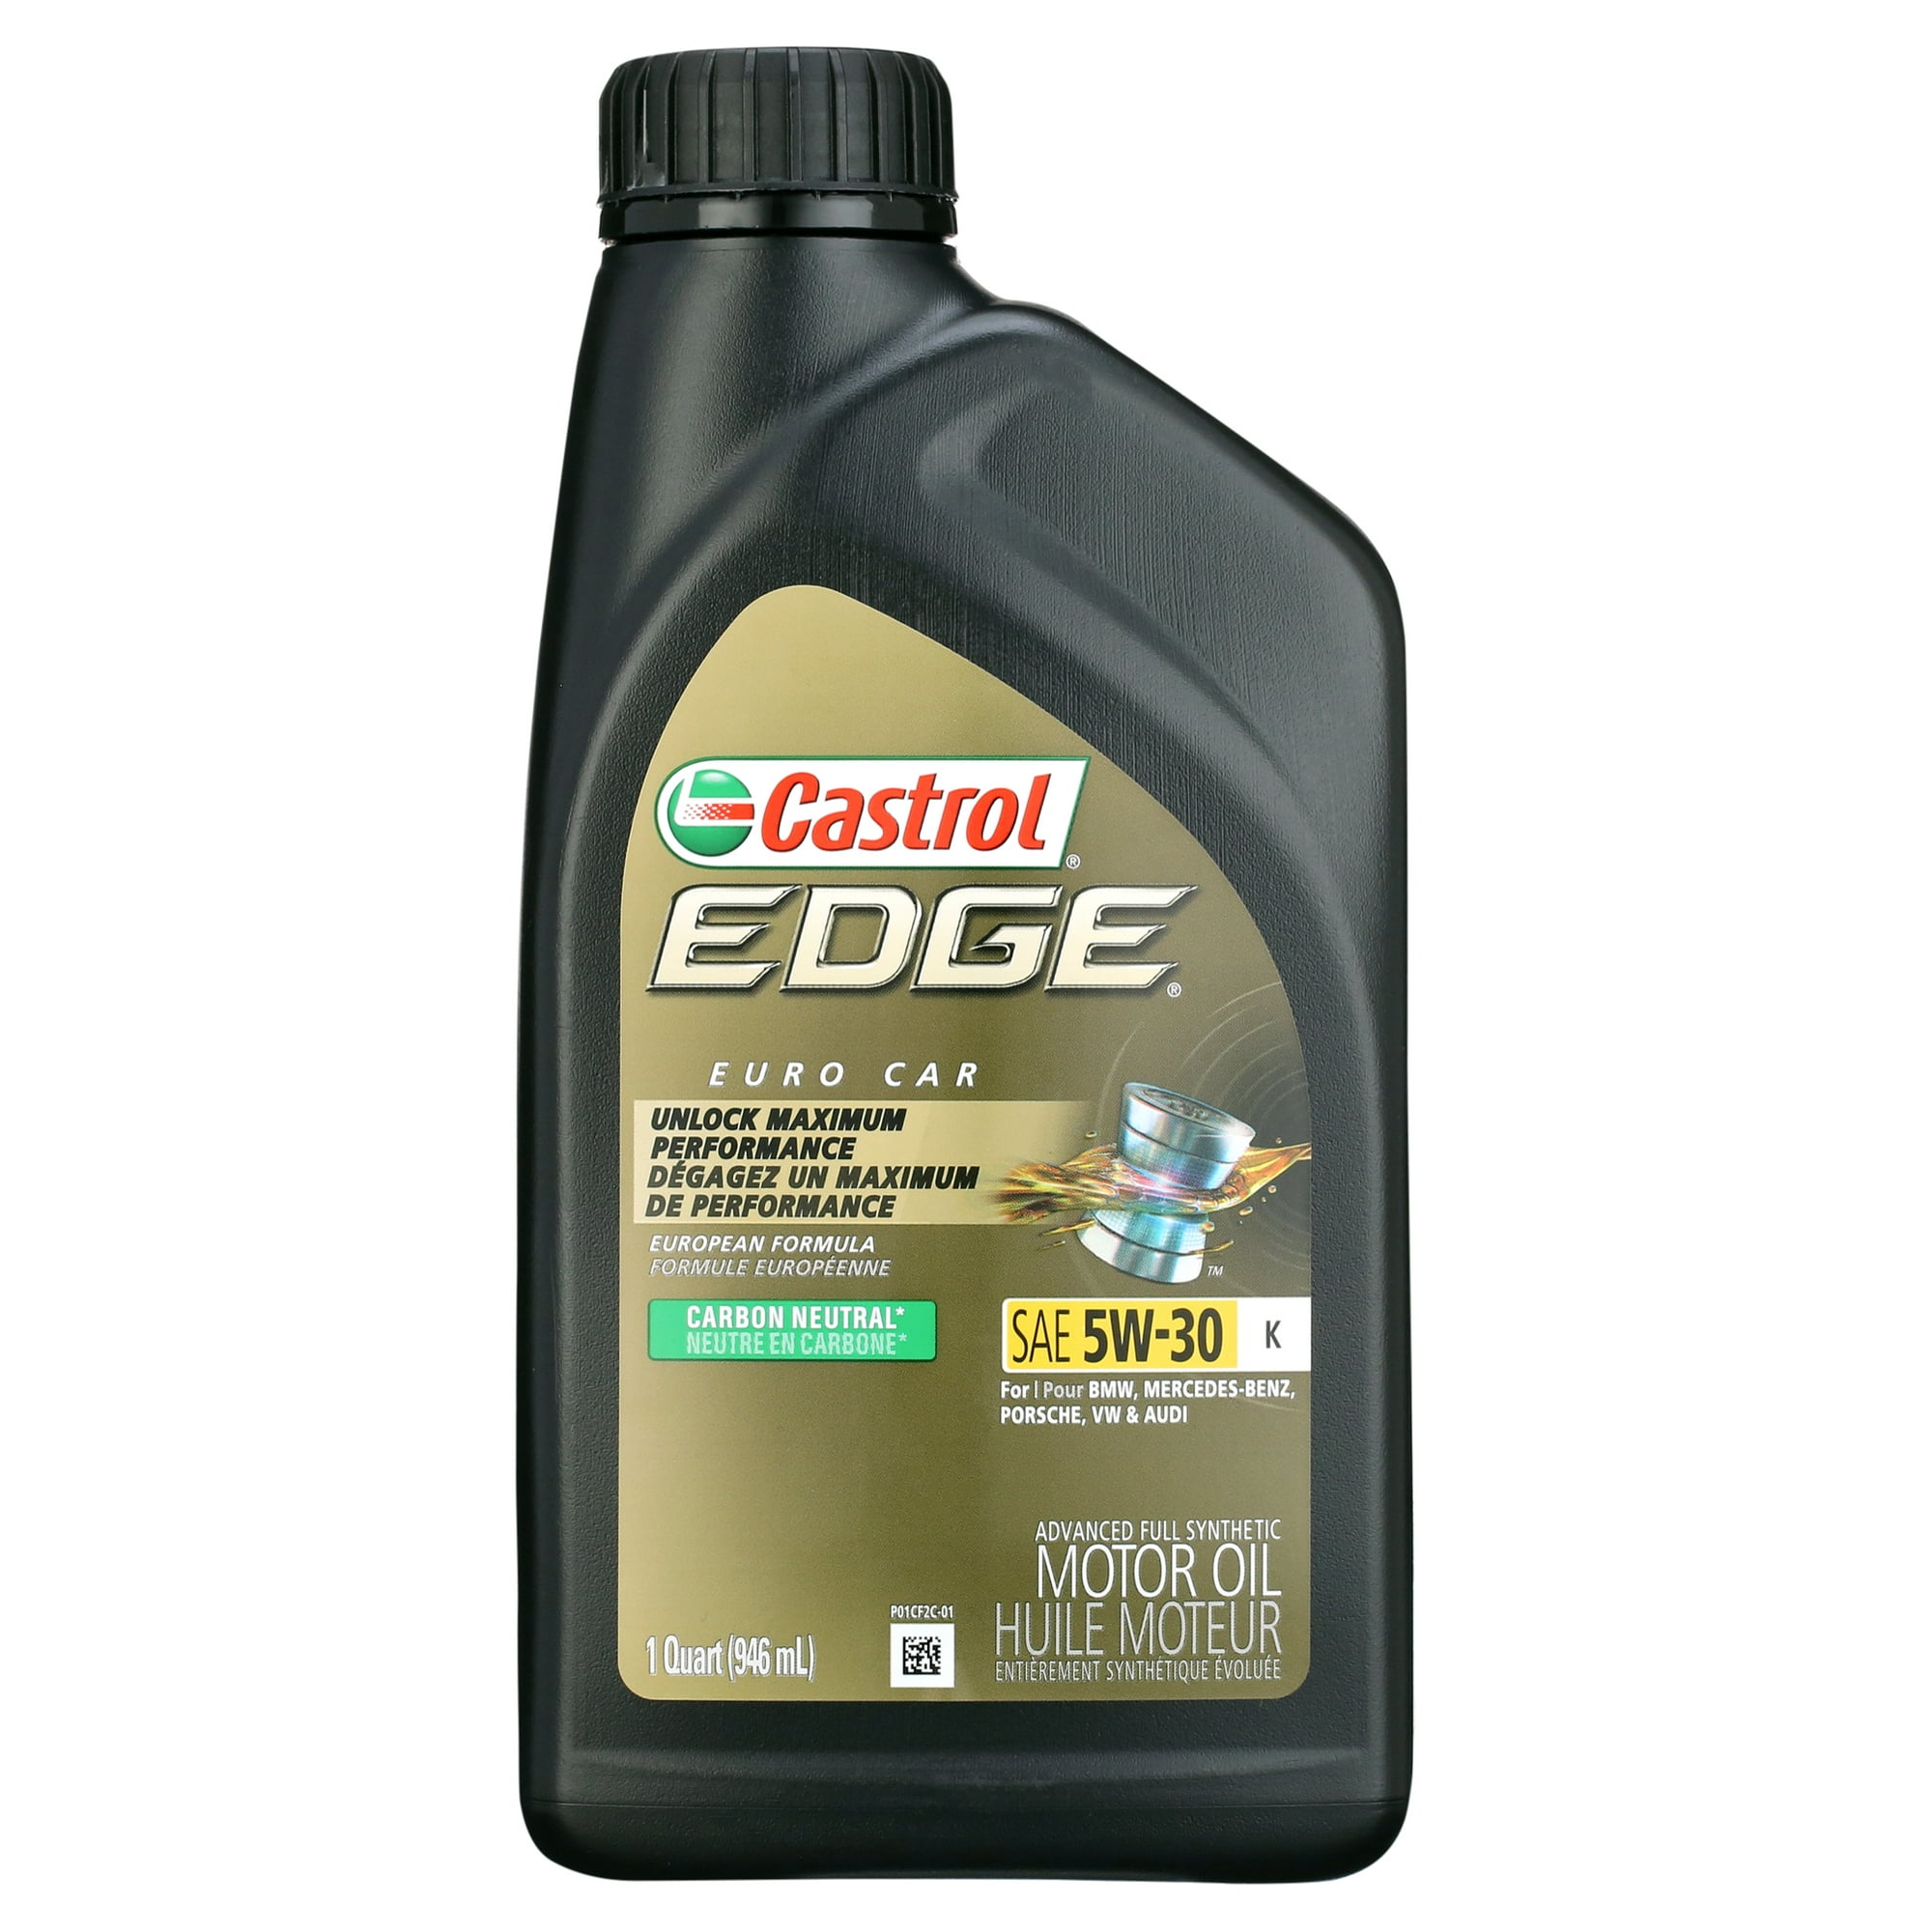 Castrol Edge 5W-30 K Advanced Full Synthetic Motor Oil, 1 Quart ...